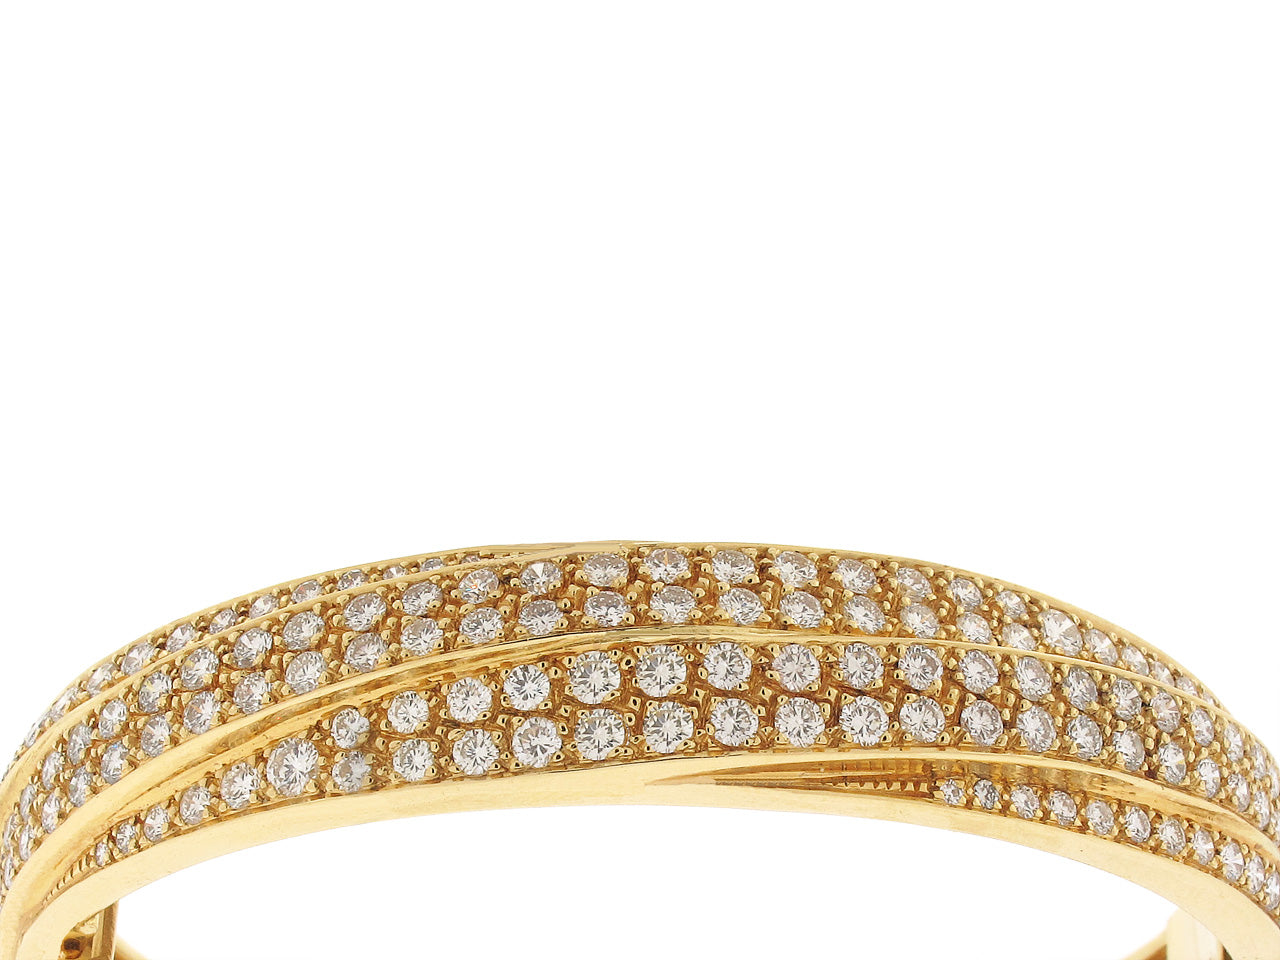 French Diamond Bangle Bracelet in 18K